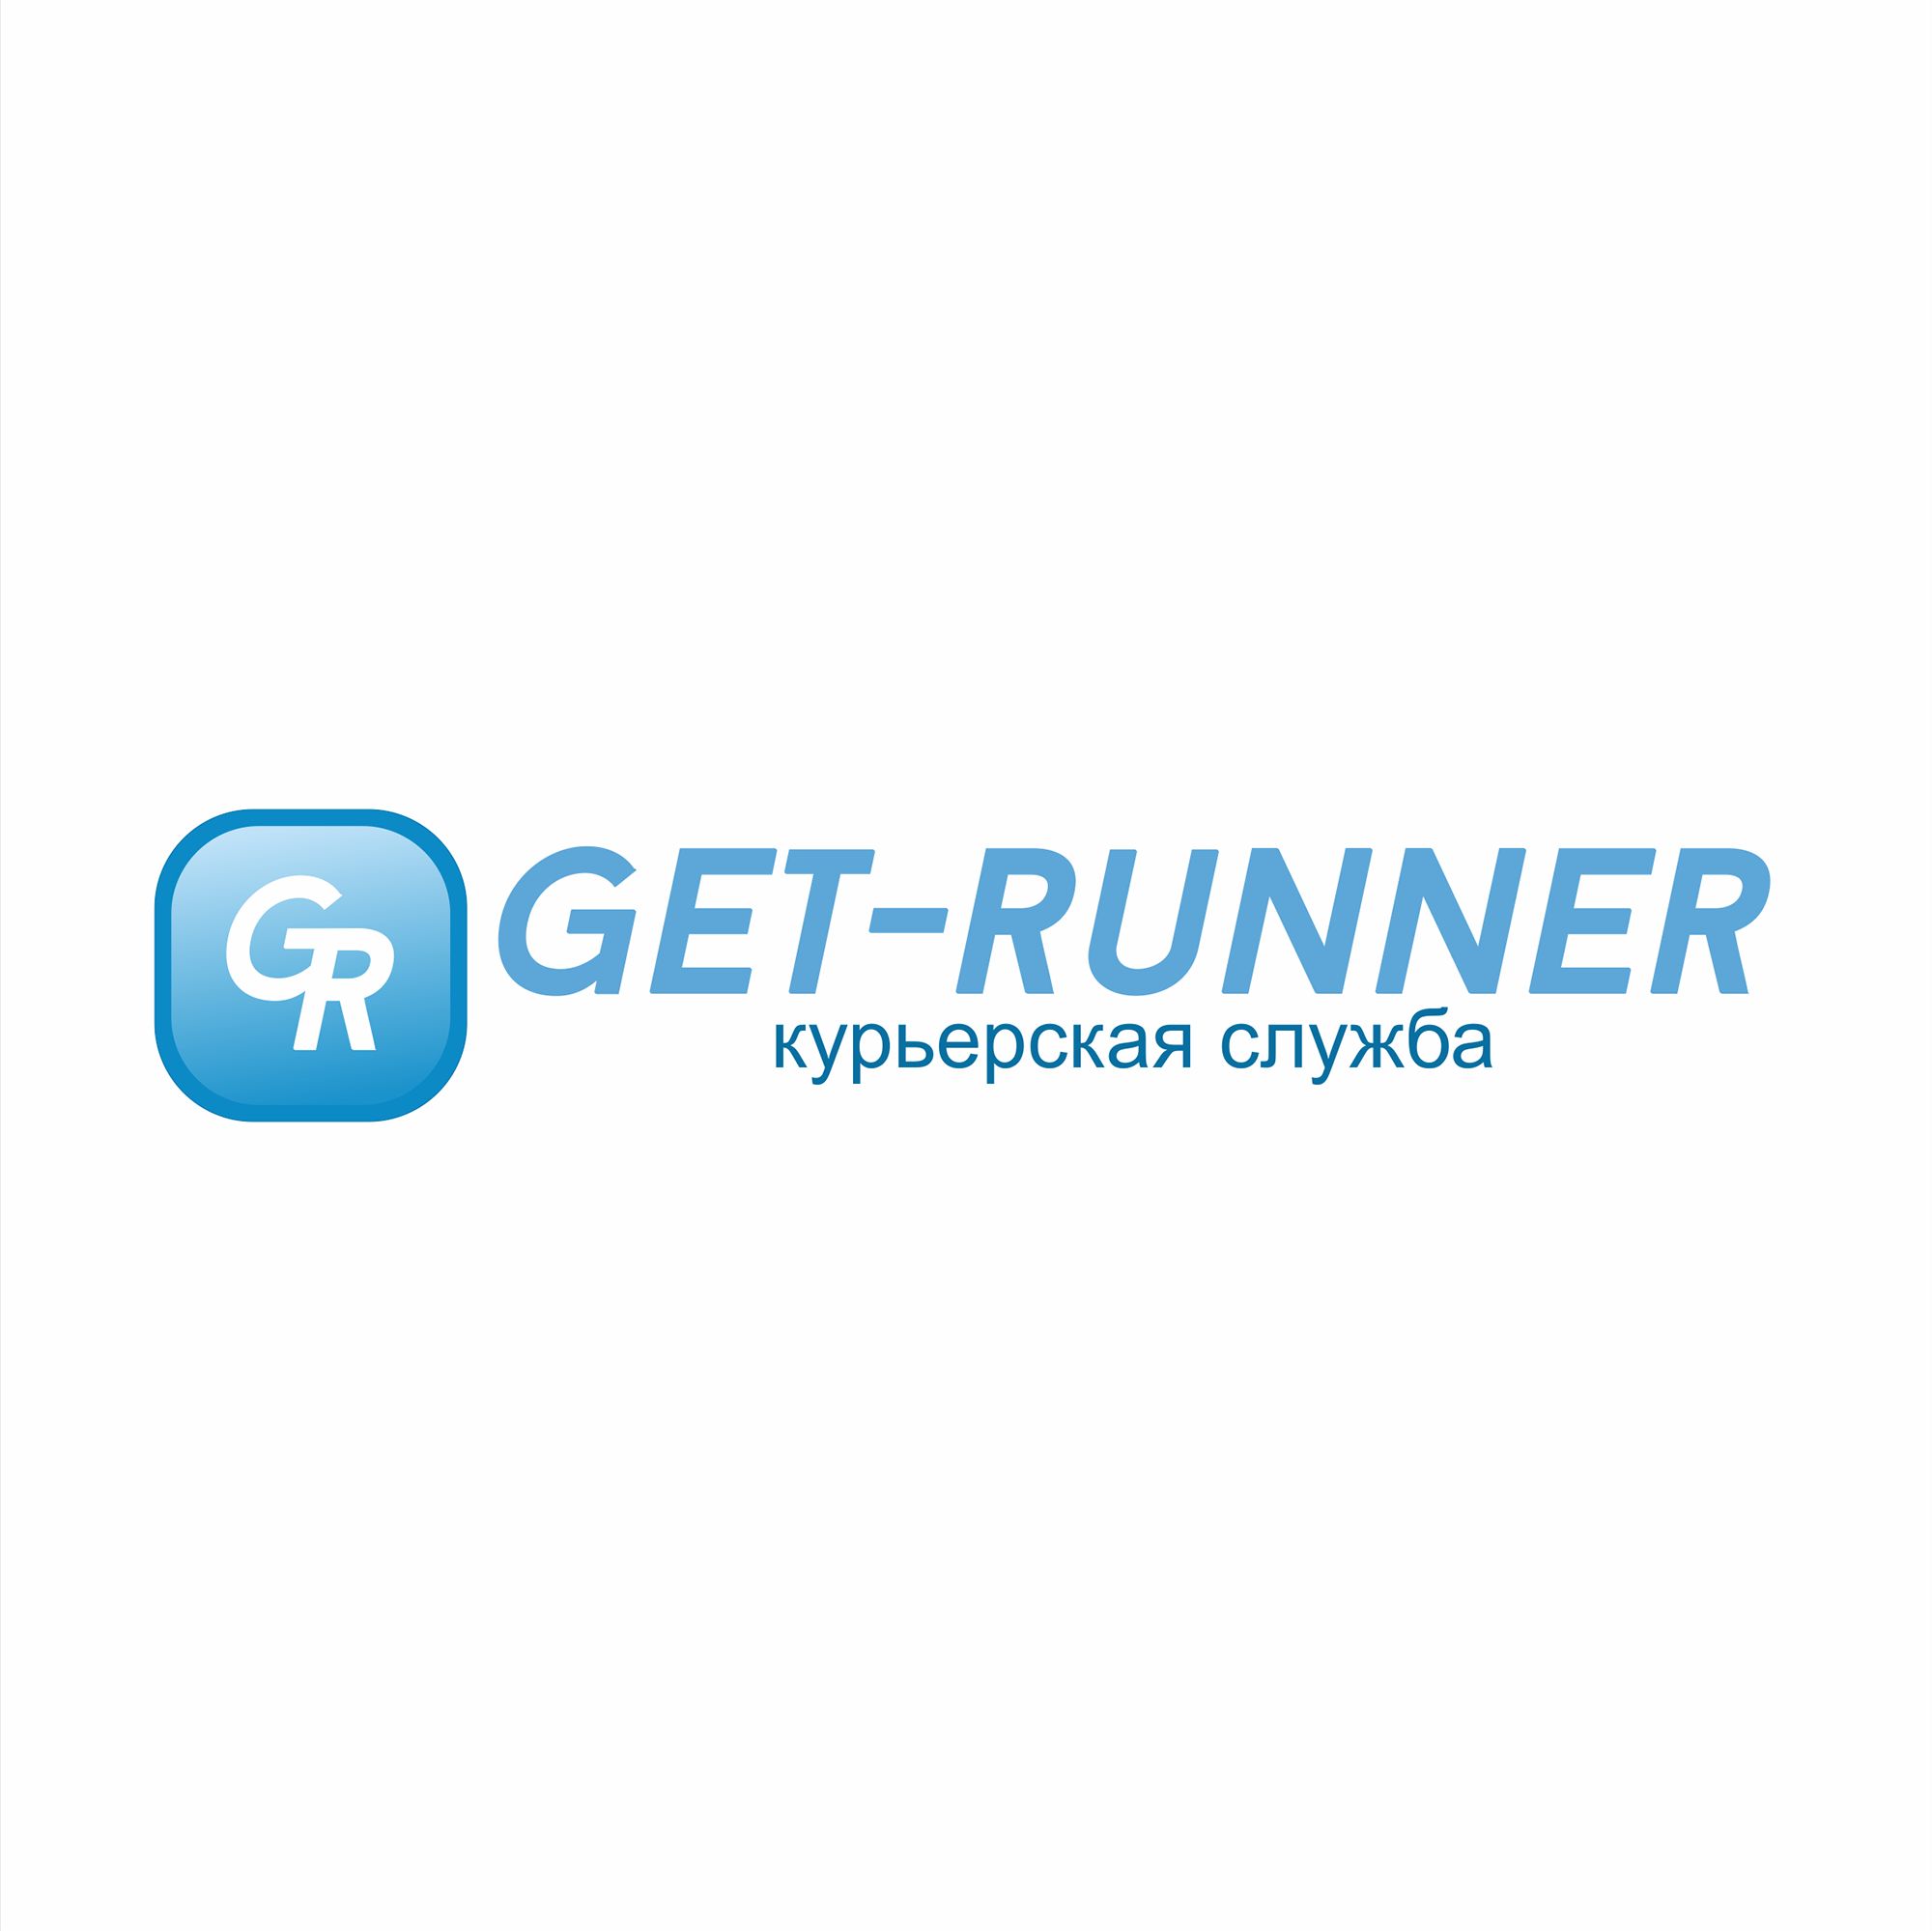 Логотип для get-runner - дизайнер elena08v